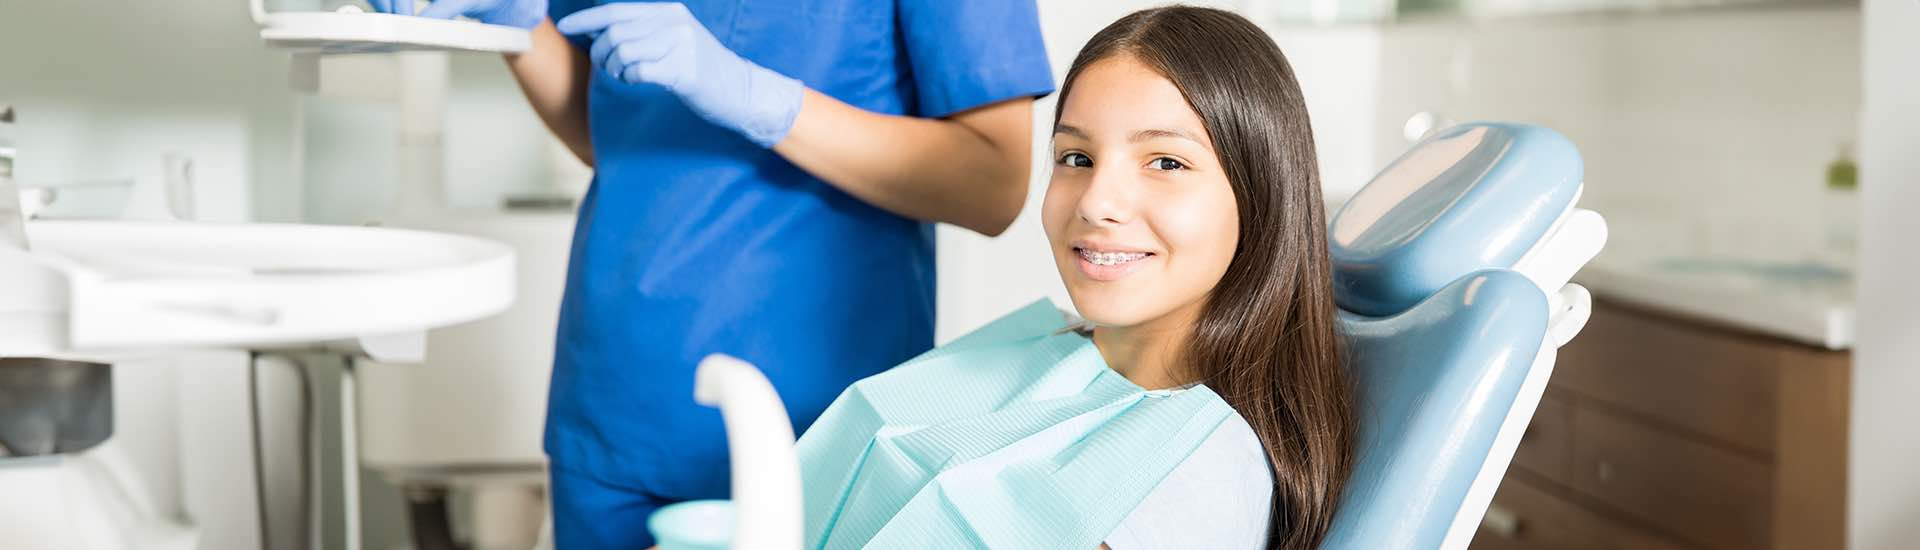 Kiedy rozpocząć leczenie ortodontyczne?